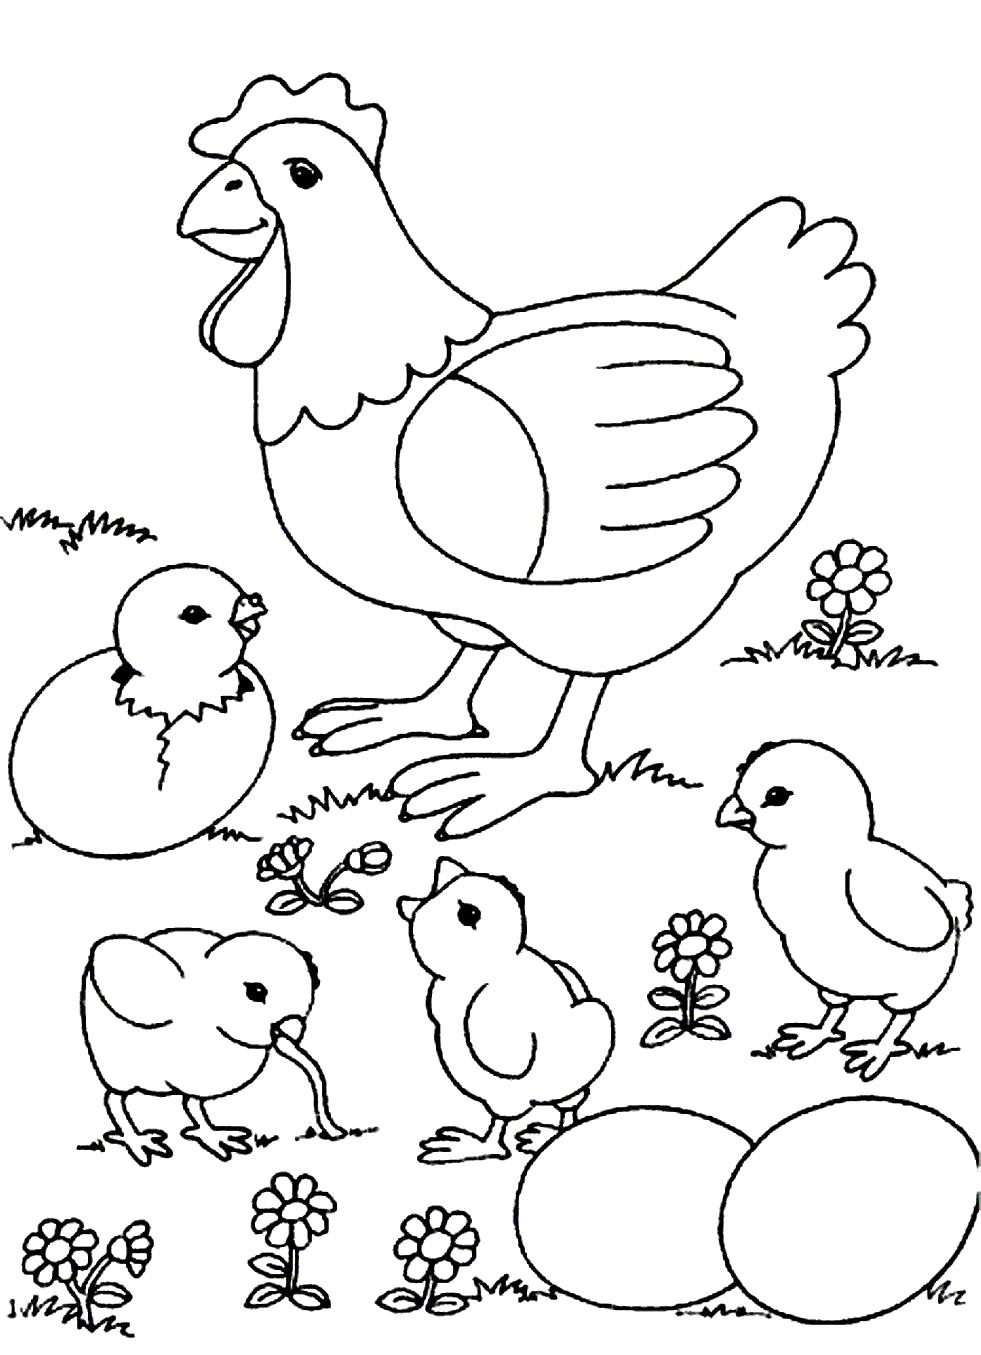 Раскраска Мама и цыплята. Домашние животные